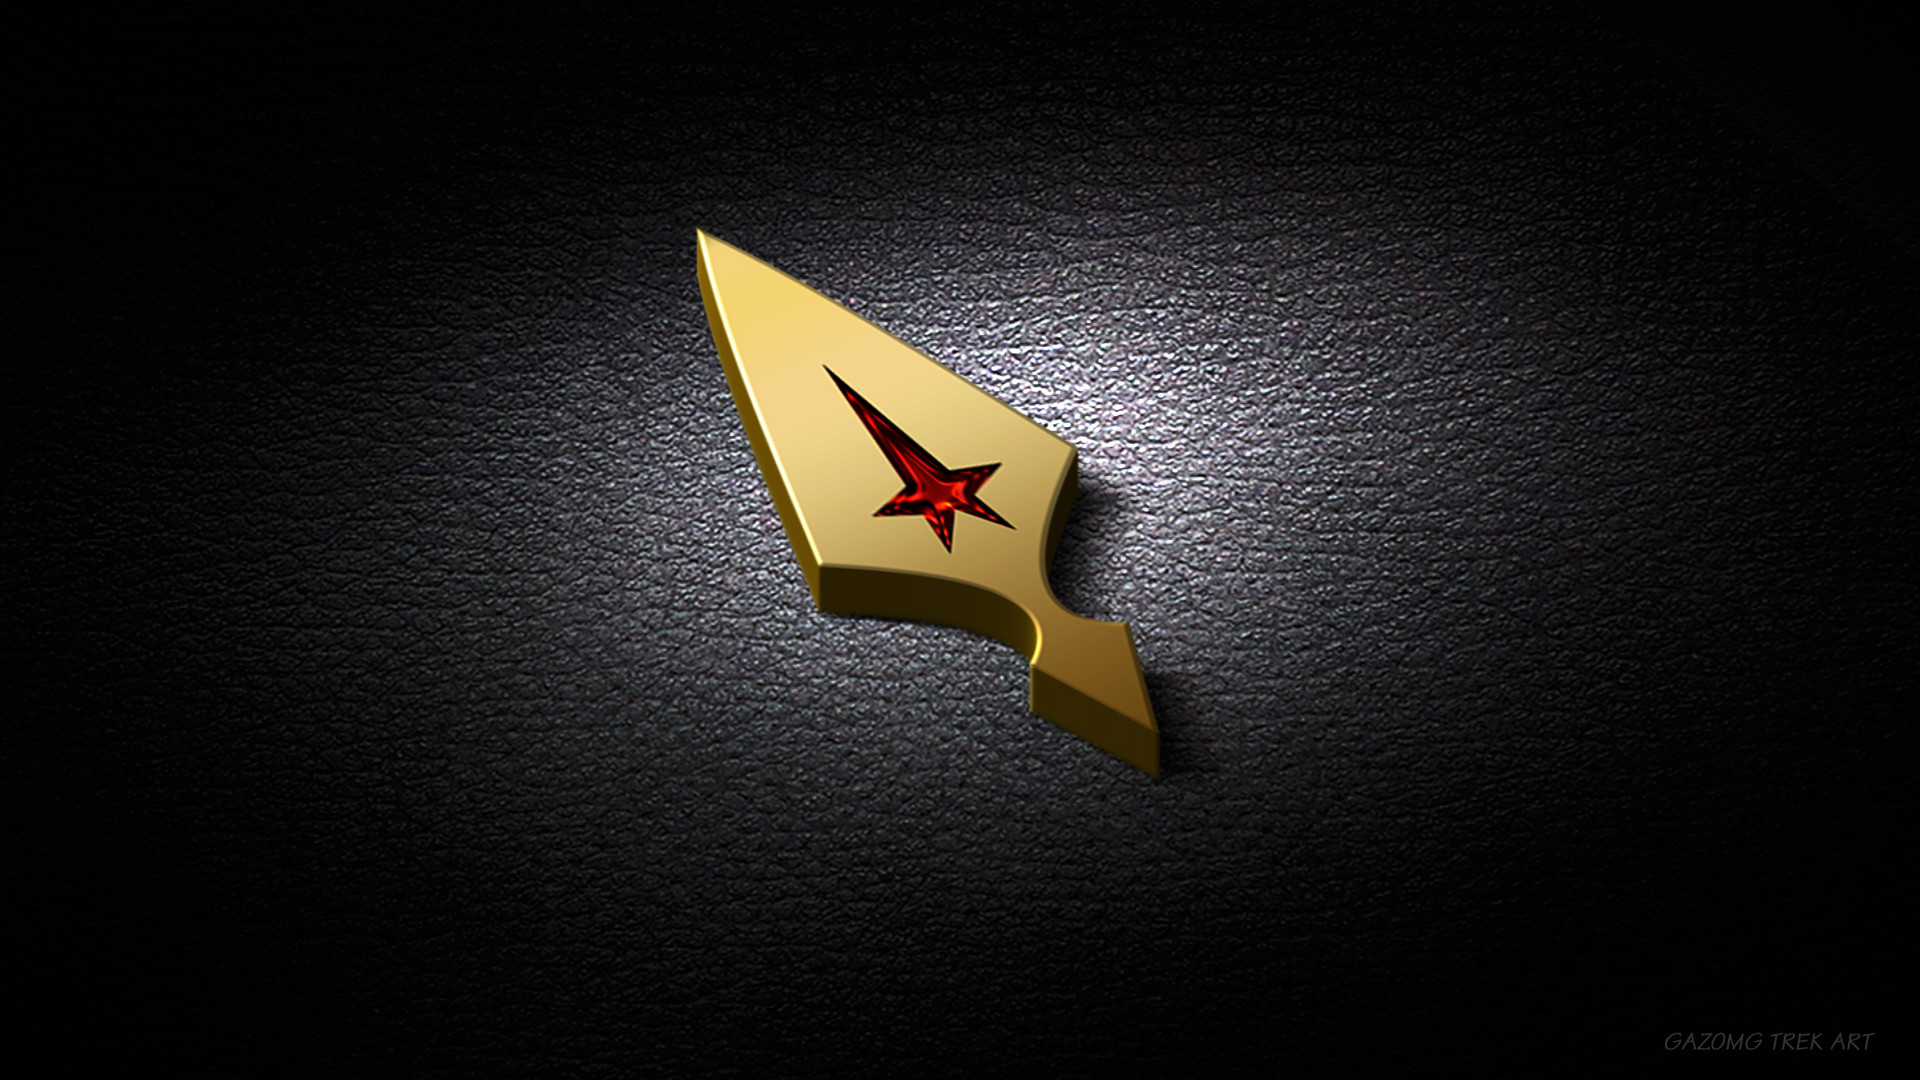 1920x1080 Star Trek Axanar Logo Wallpaper by gazomg on DeviantArt